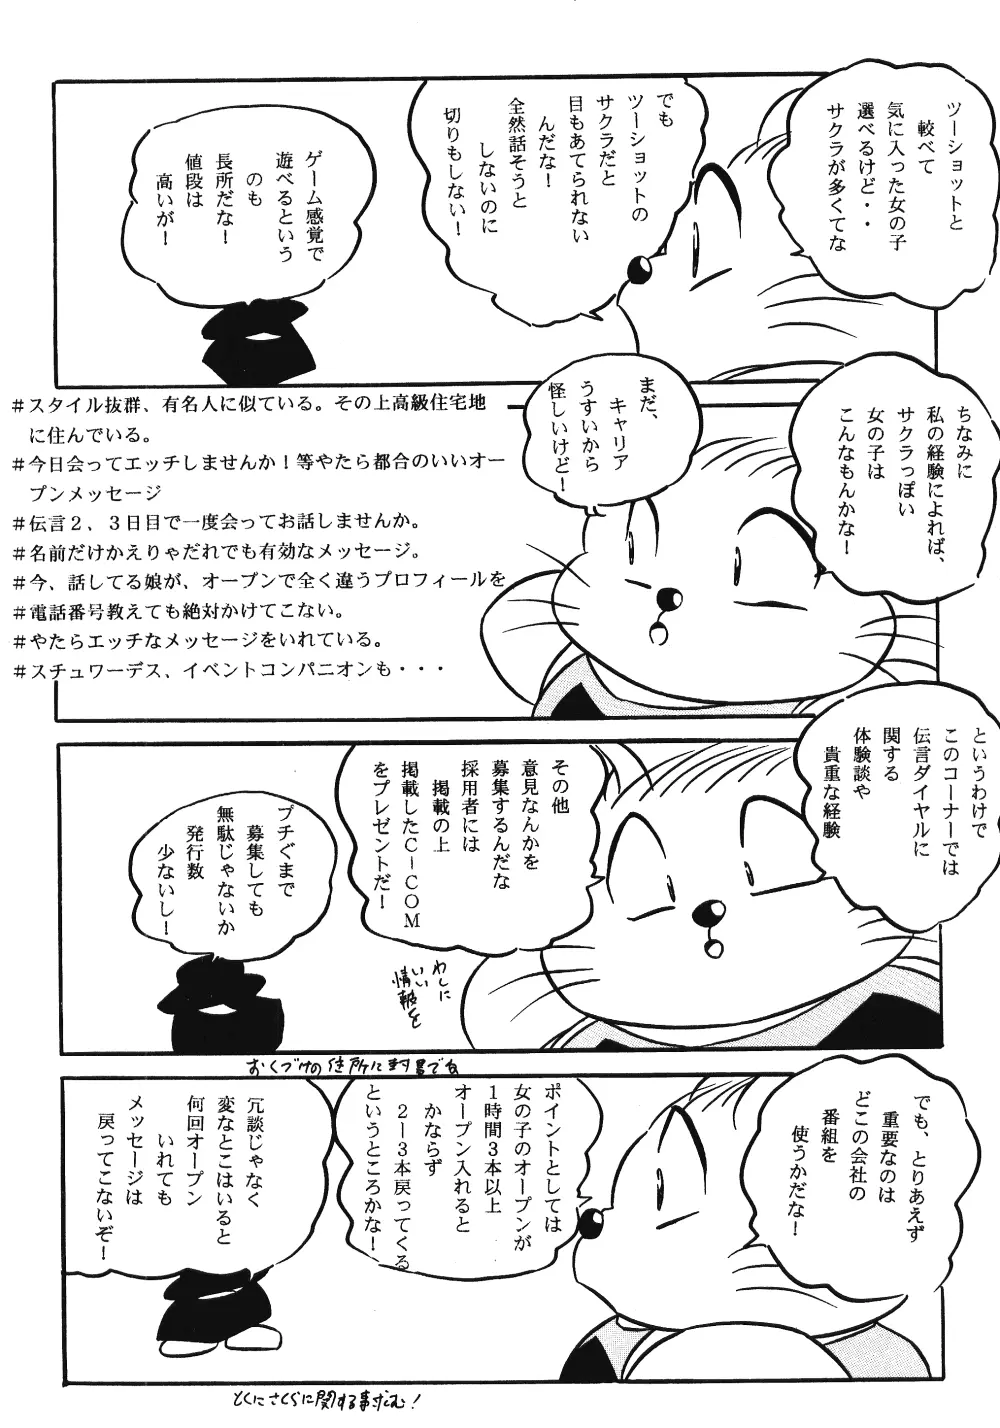 Puchiguma Butsuku 3 16ページ